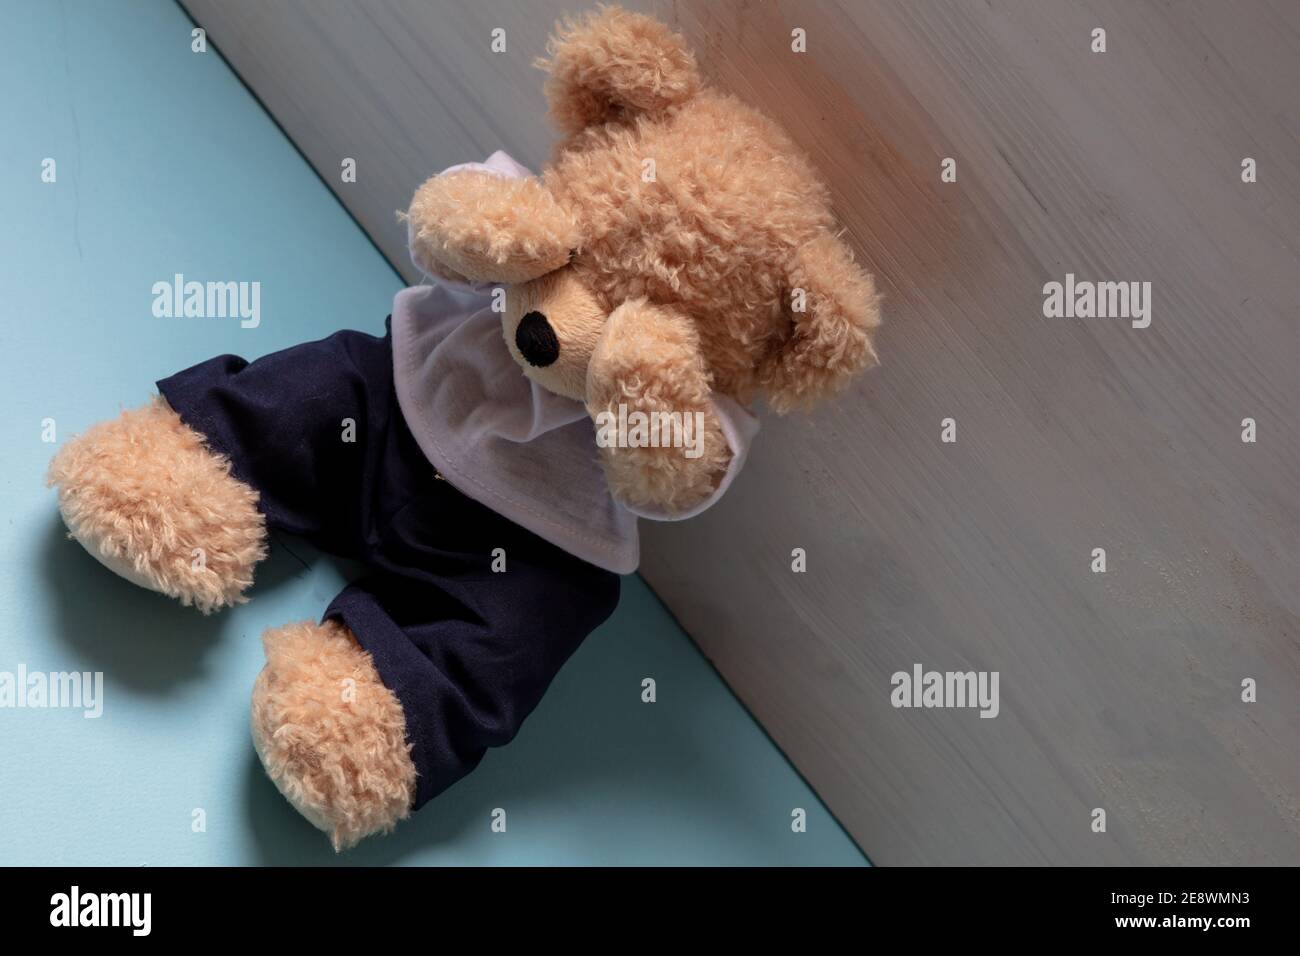 Teddybär sitzt allein auf blauem Boden in einem leeren Kinderzimmer, Augen bedeckt, Kindesmissbrauch, traurige Angst Kind Konzept. Stockfoto